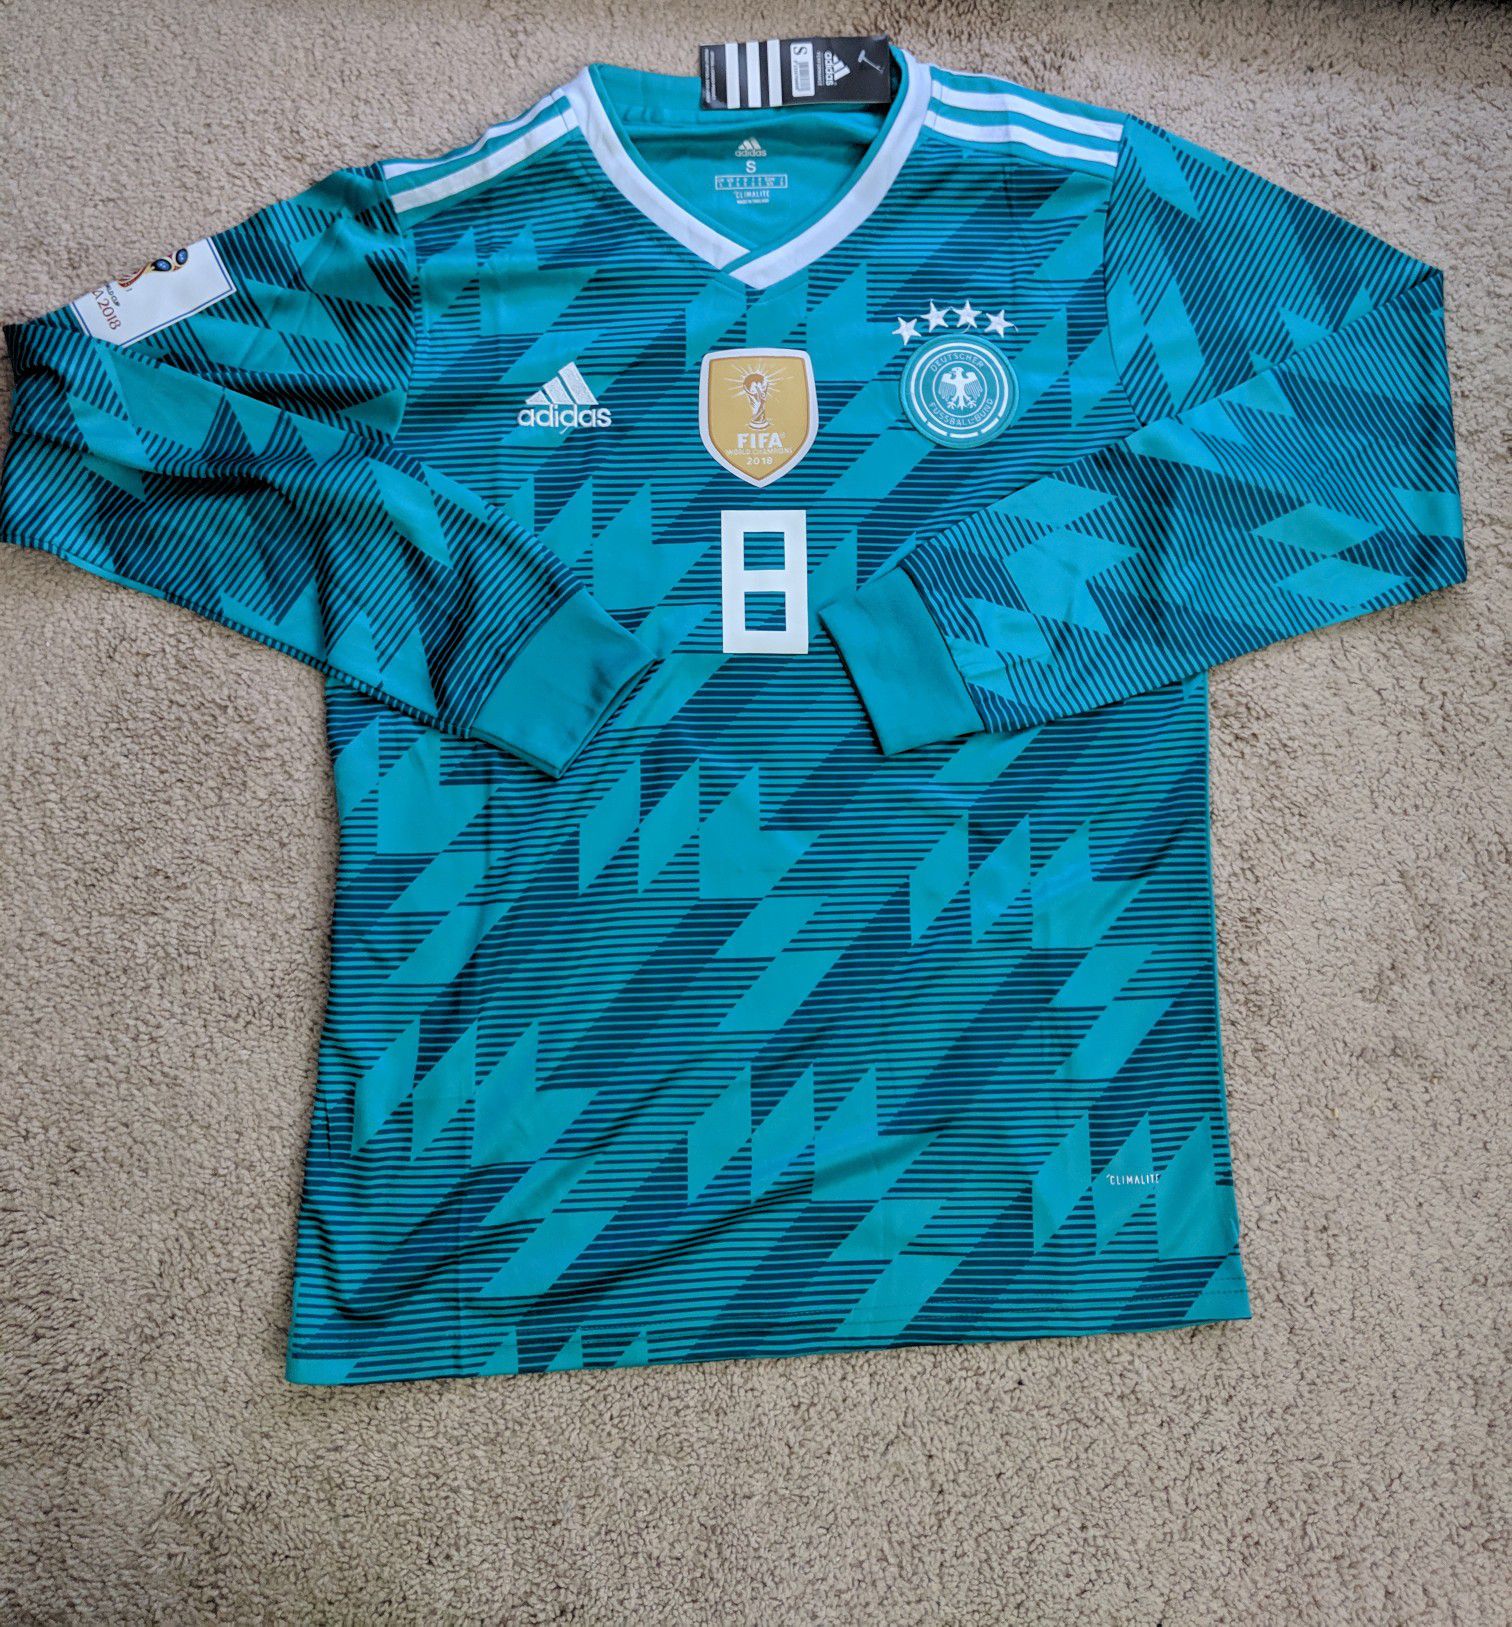 Germany Kroos jersey